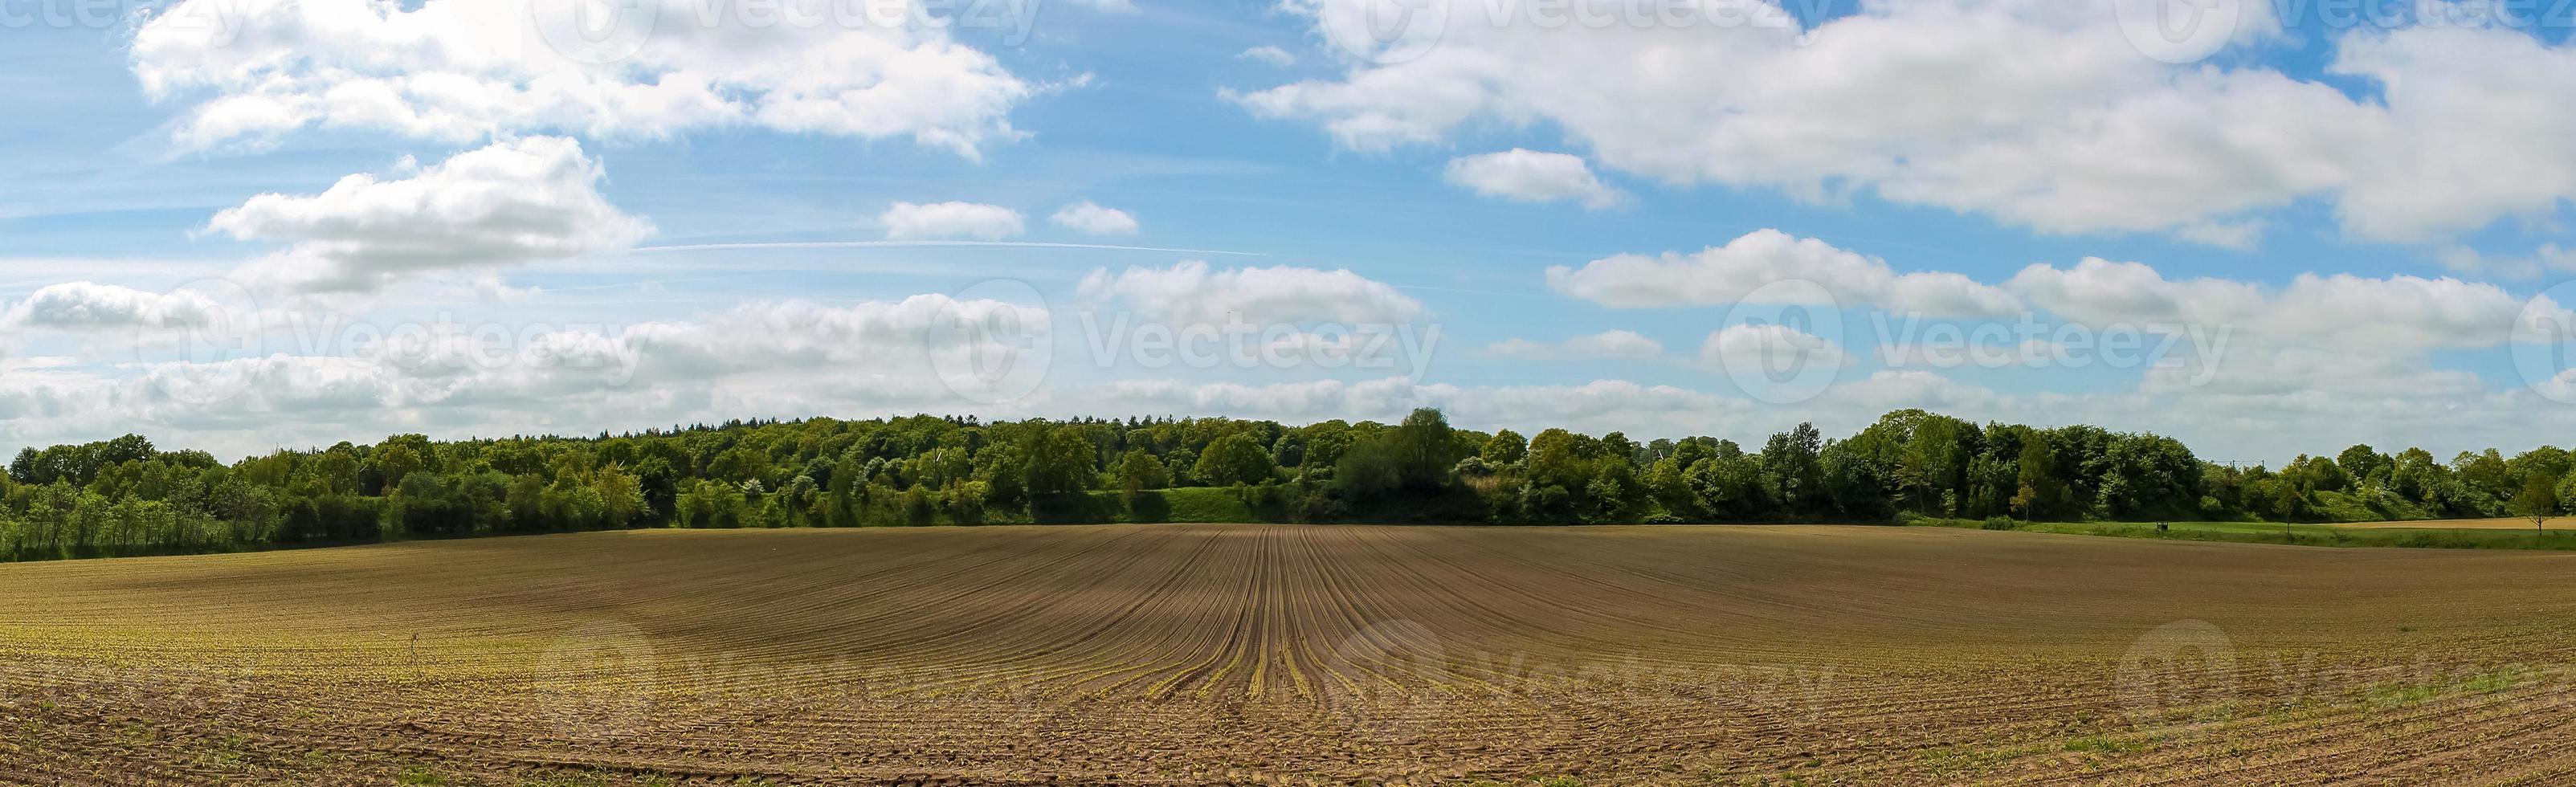 vackert högupplöst panorama av ett nordeuropeiskt landslandskap med fält och grönt gräs foto